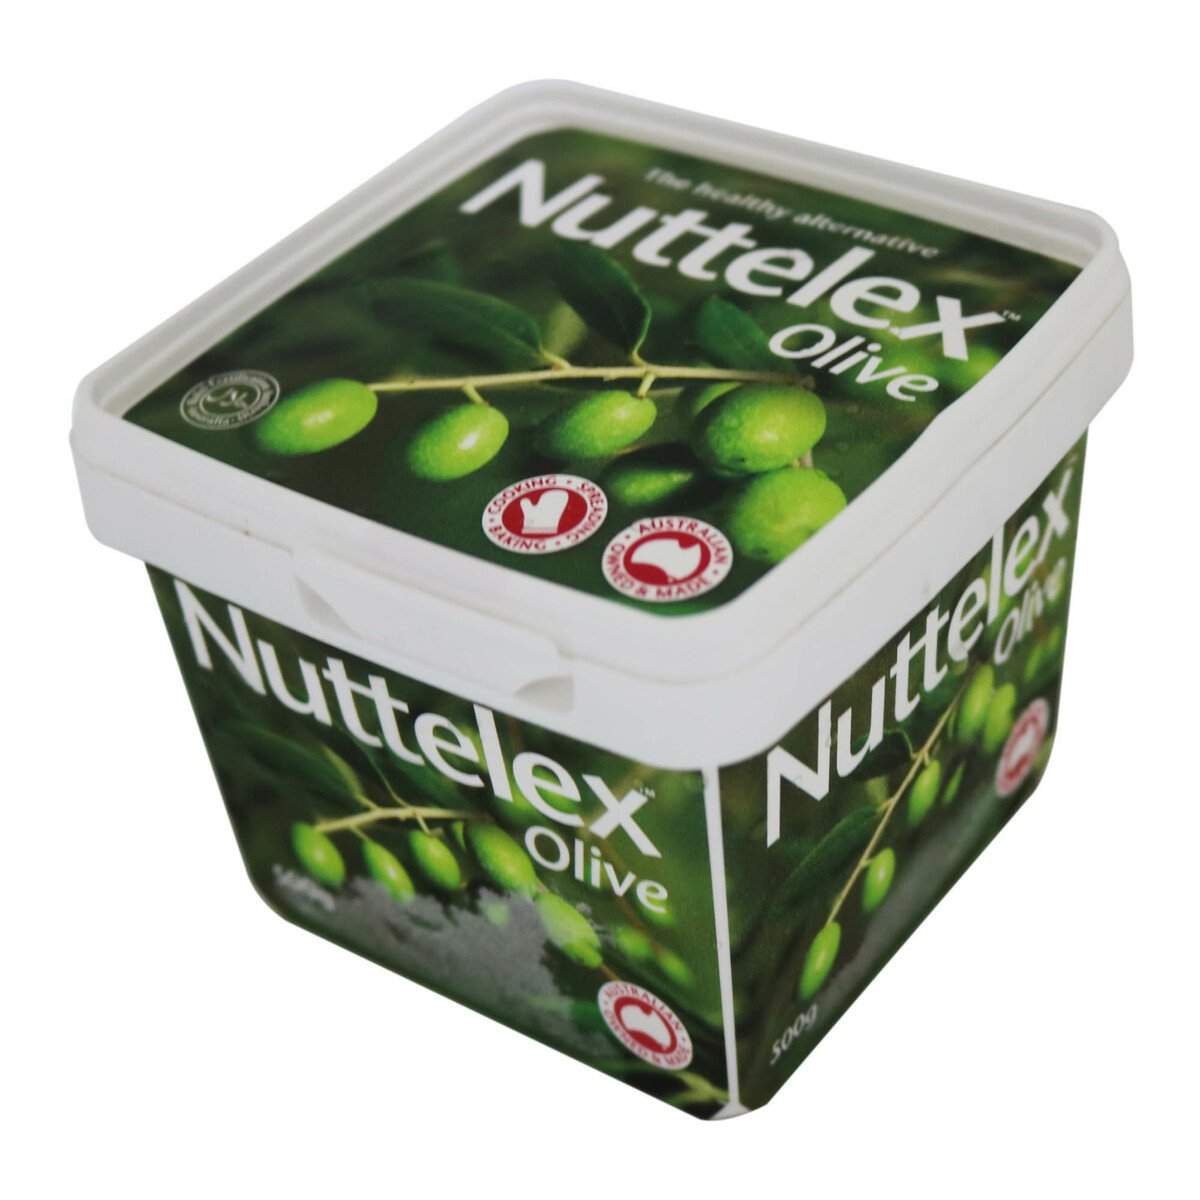 Nuttelex Olive Margari Spread 500g